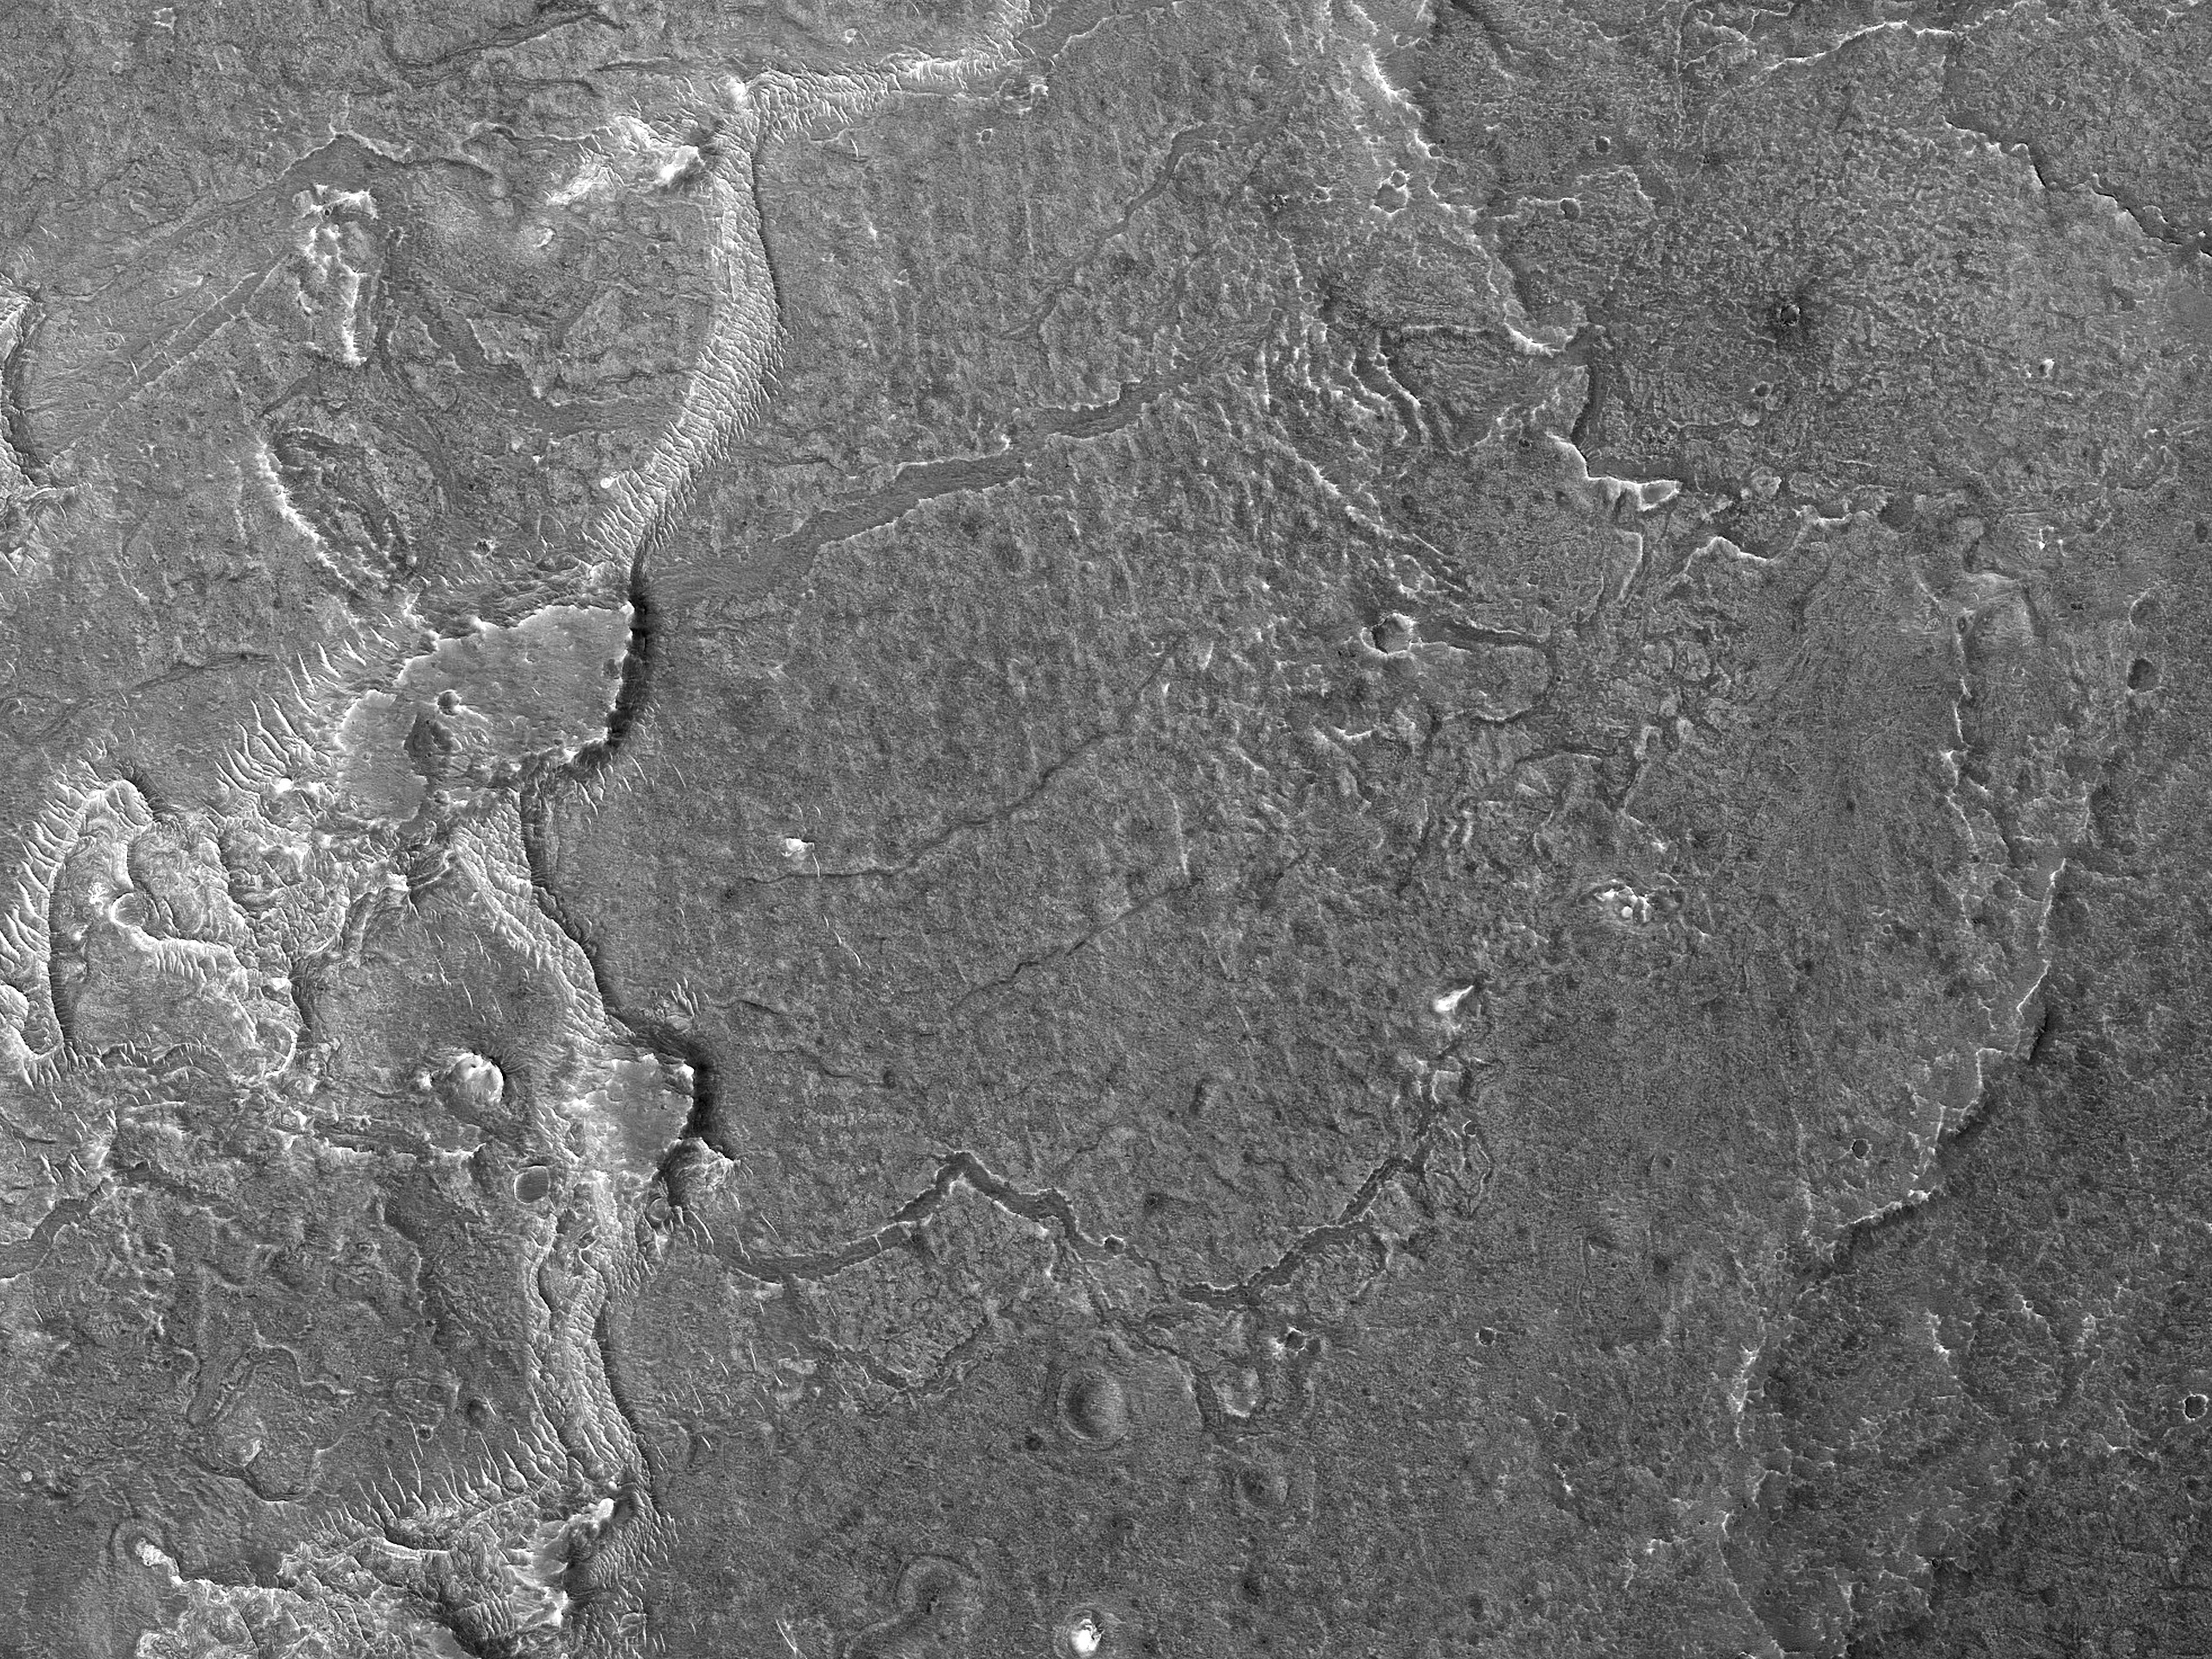 Sinuous Ridges near Juventae Chasma